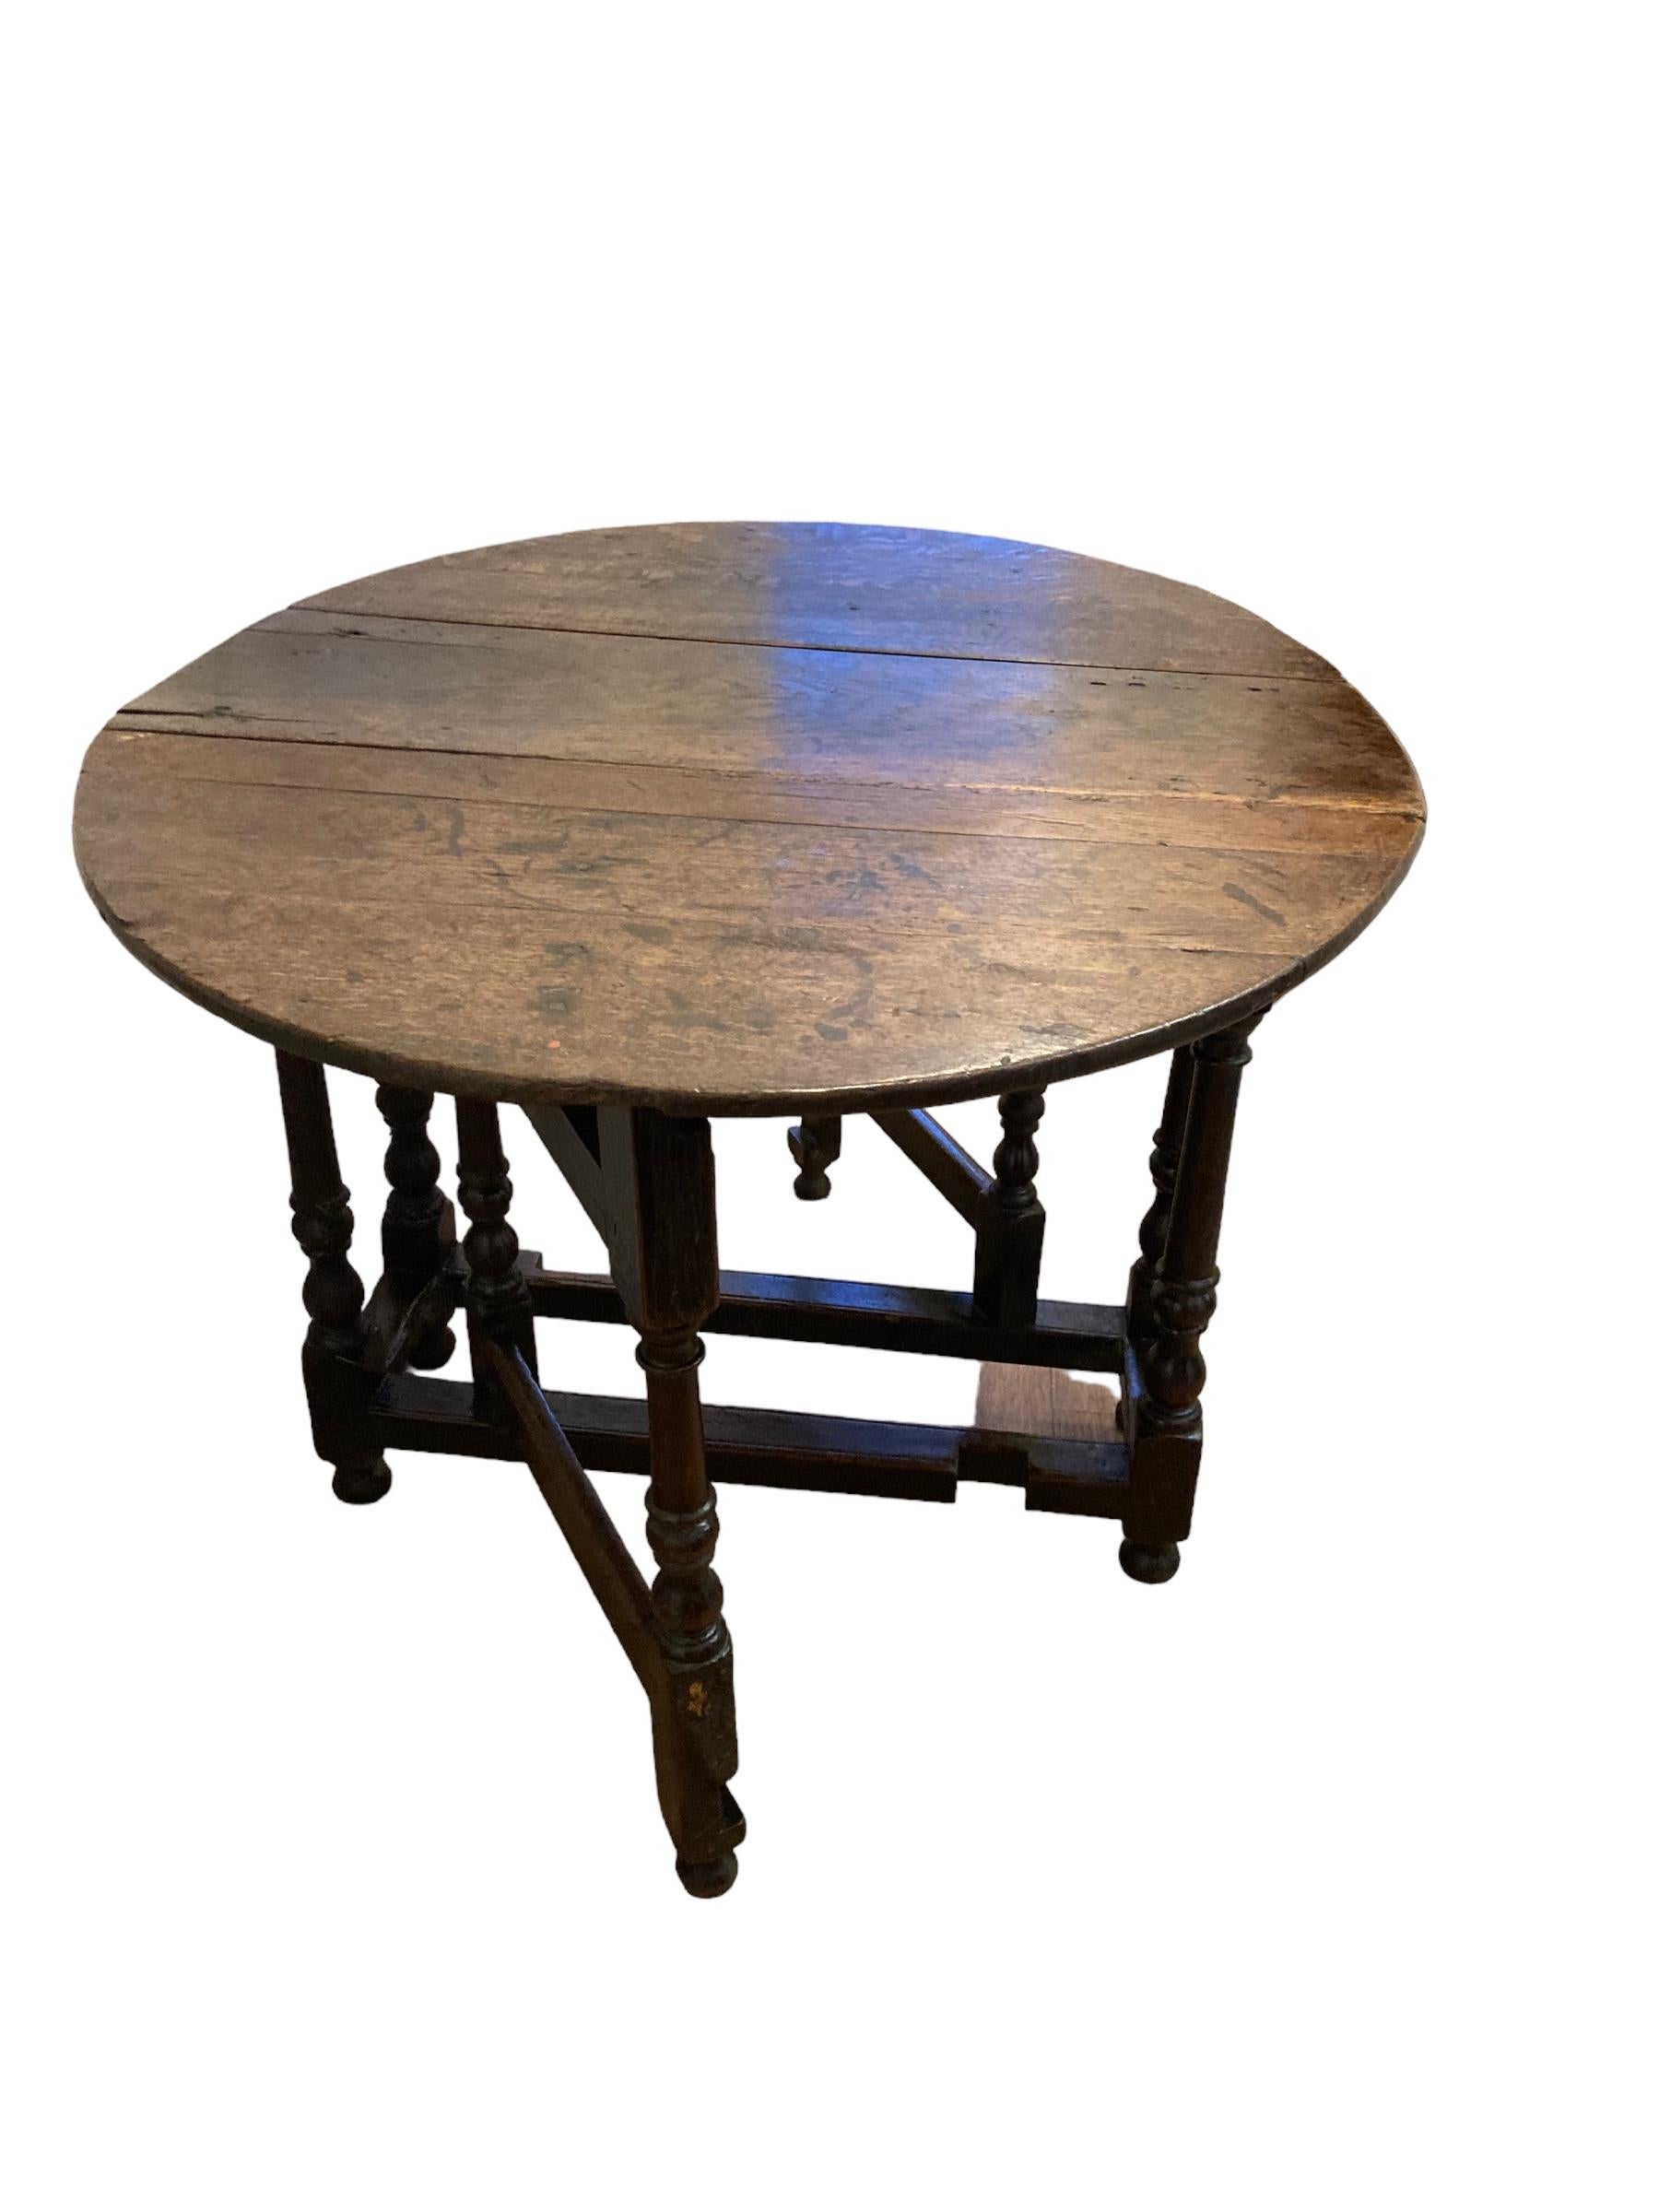 Antike englische 18. Jahrhundert Eiche Gate Leg Drop leaf Tabelle, auf gedrehten Säulenbeinen. Eine einzelne Schublade auf einer Seite mit rundem Knaufgriff. Dieses Stück ist sowohl praktisch als auch kunstvoll und ein solides Möbelstück, das 250